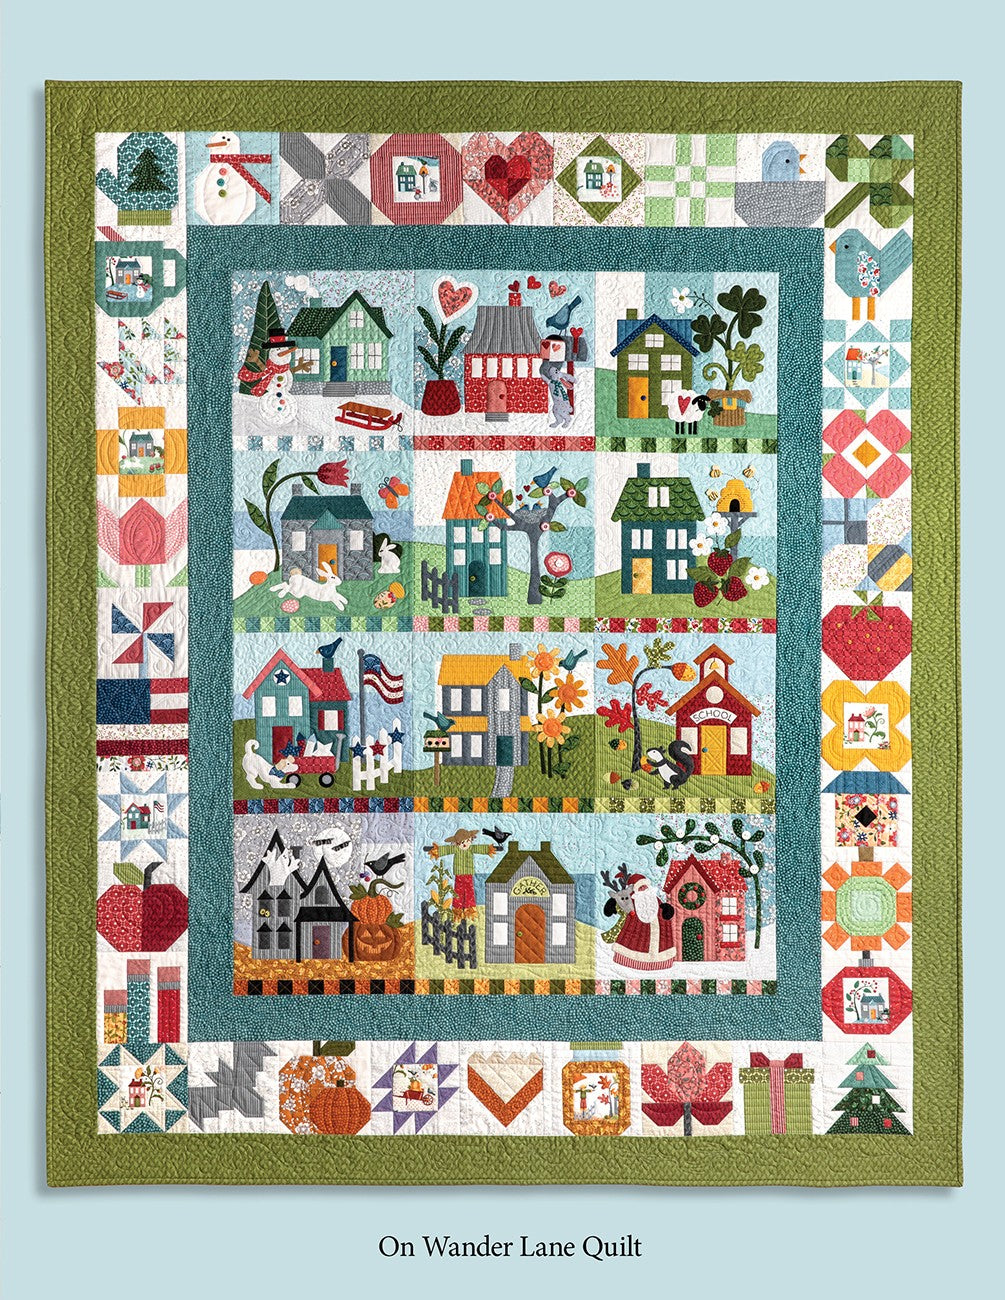 Frost Hill on Wander Lane Quilt Pattern (January - Block 1 ) by Nancy Halvorsen of Art to Heart